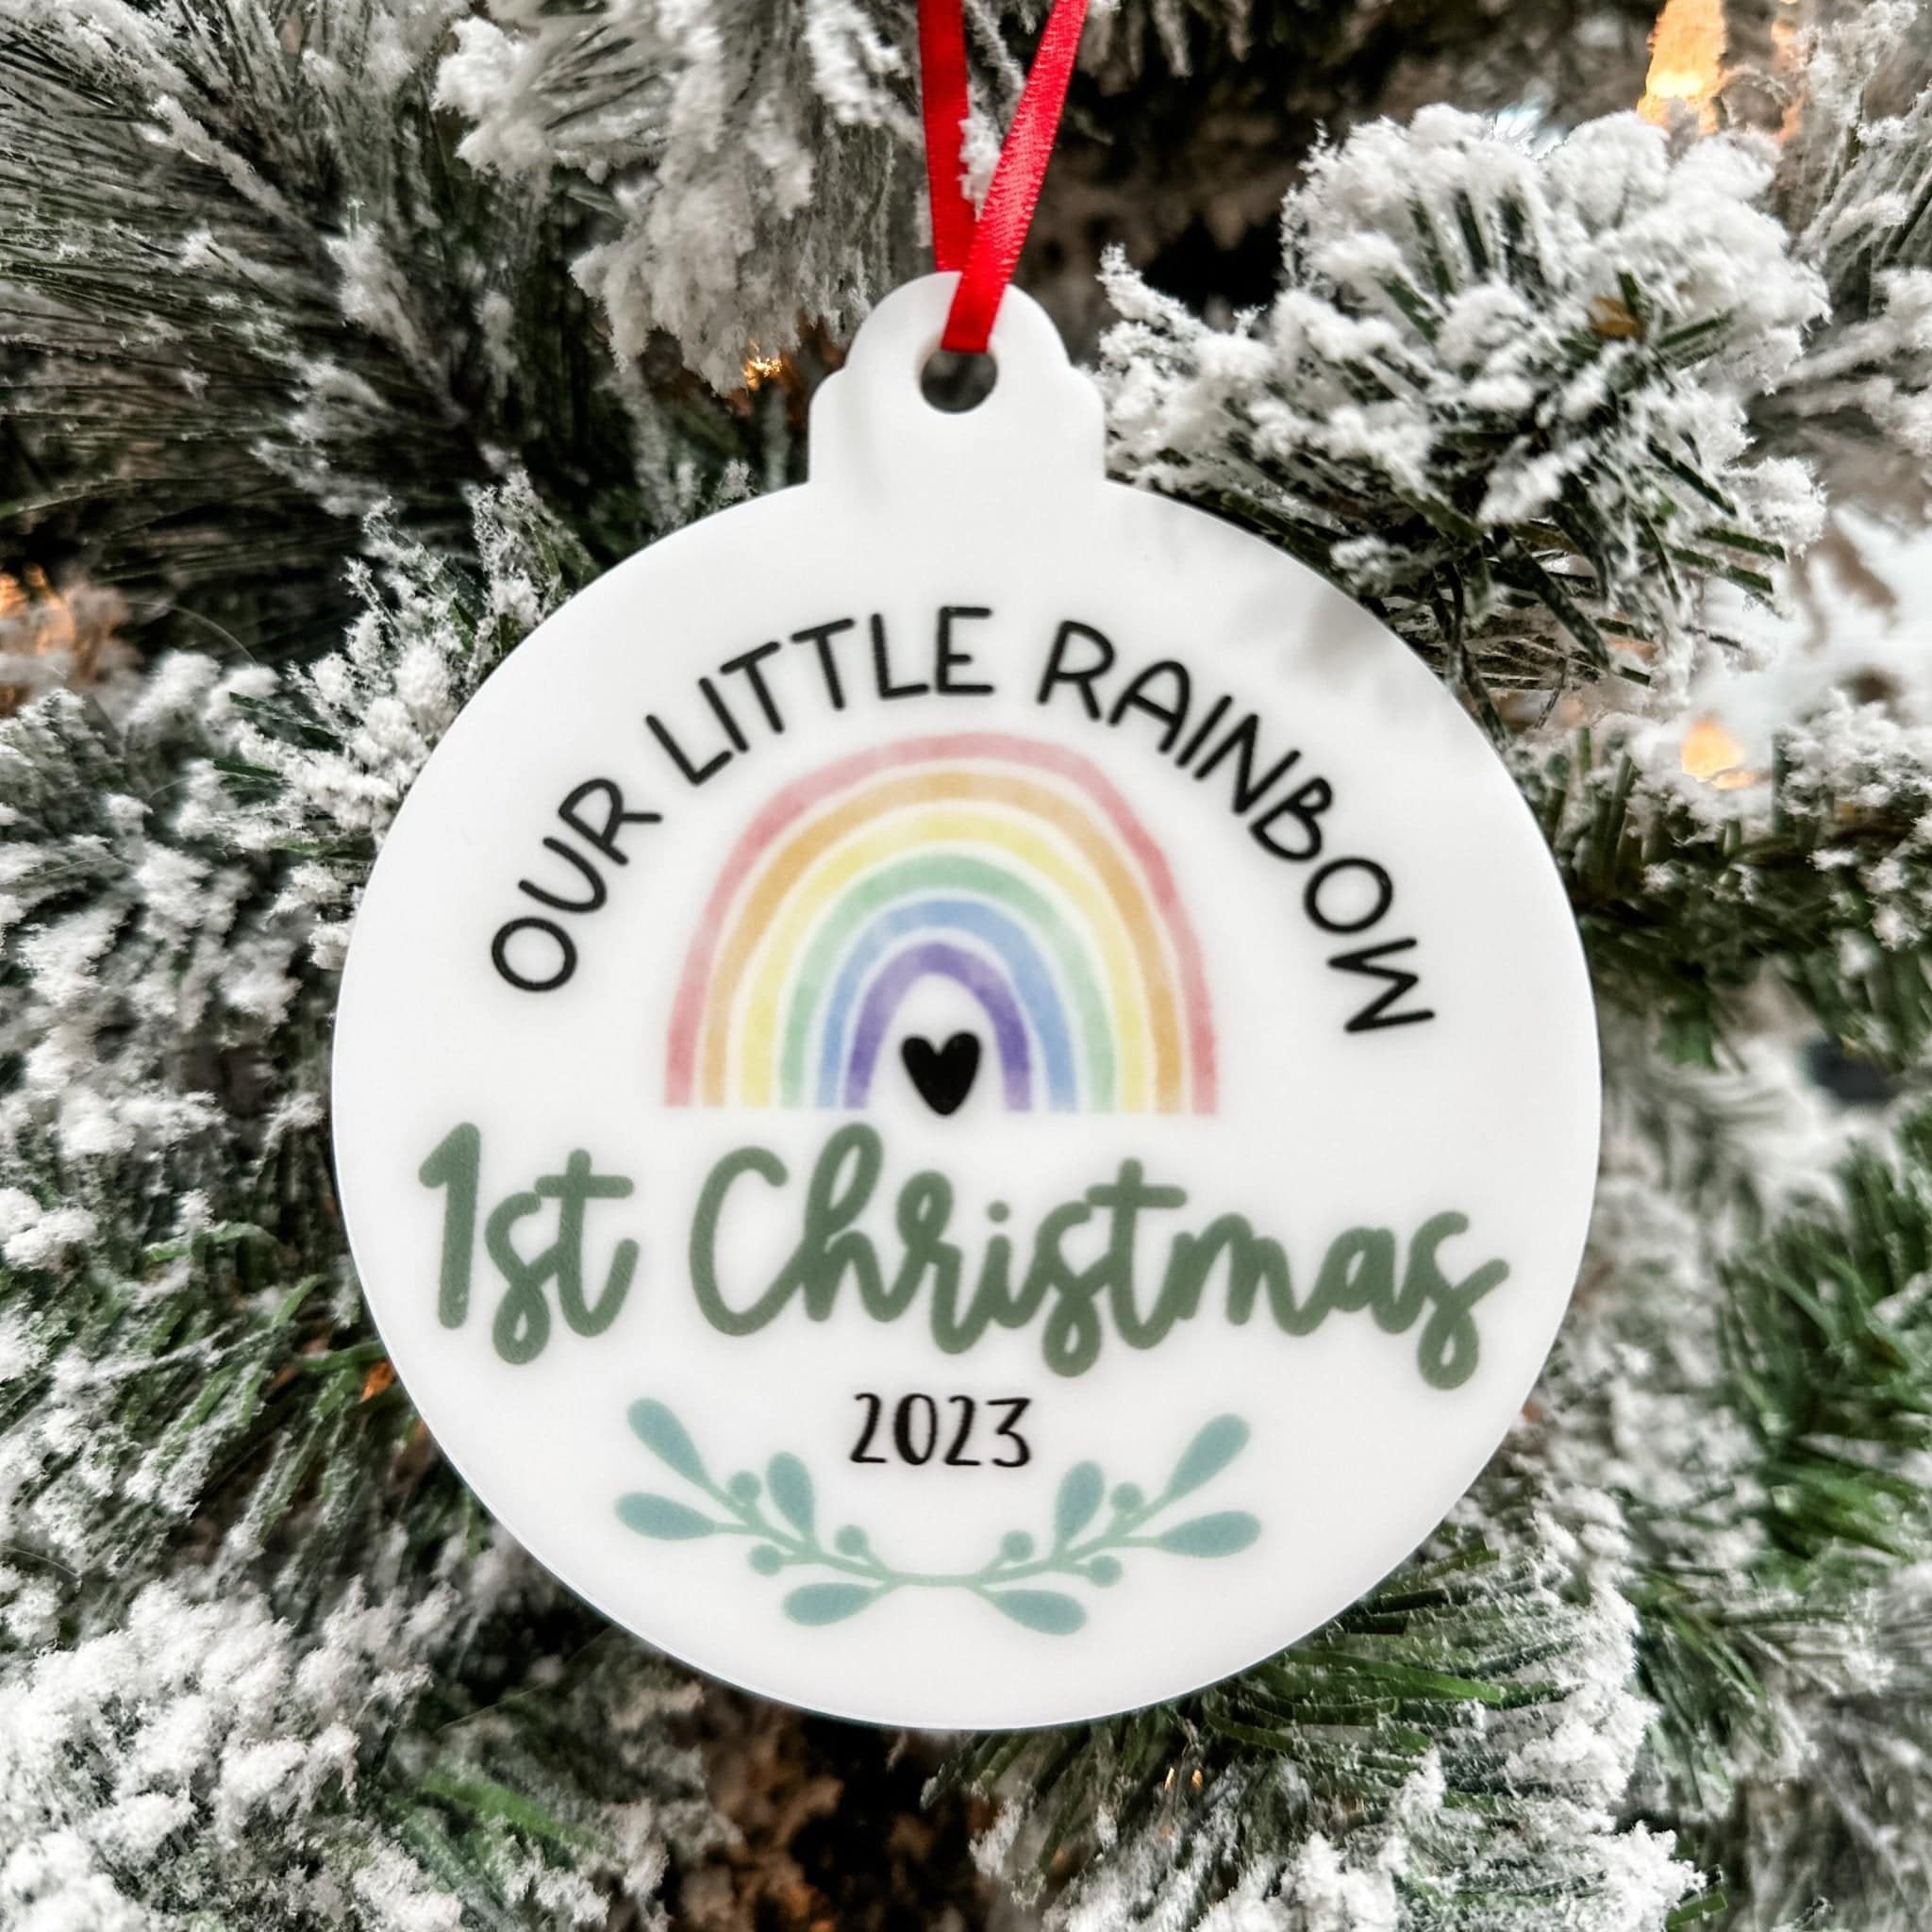 Our Little Rainbow 1st Christmas Acrylic Ornament - Sticks & Doodles